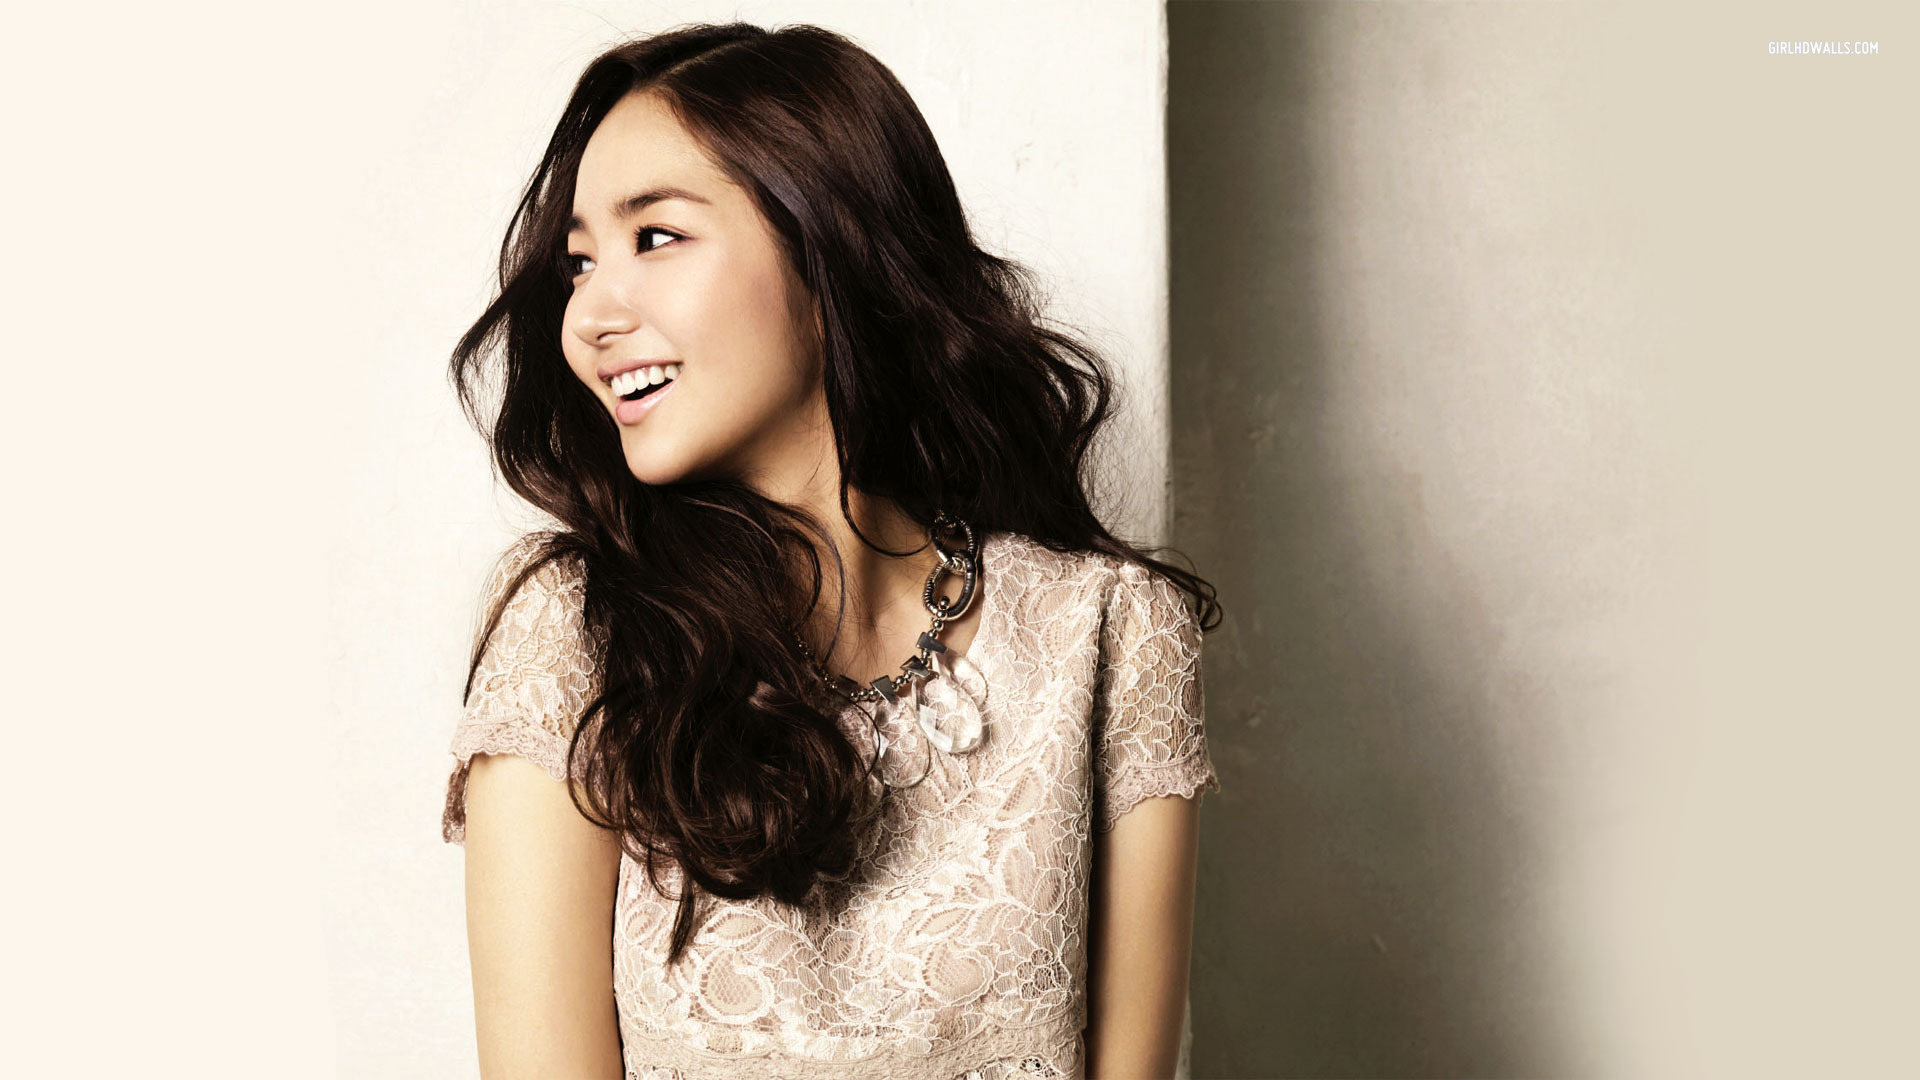 10 Park Min Young Beautiful Korean Actress Photos - Yoanu.com